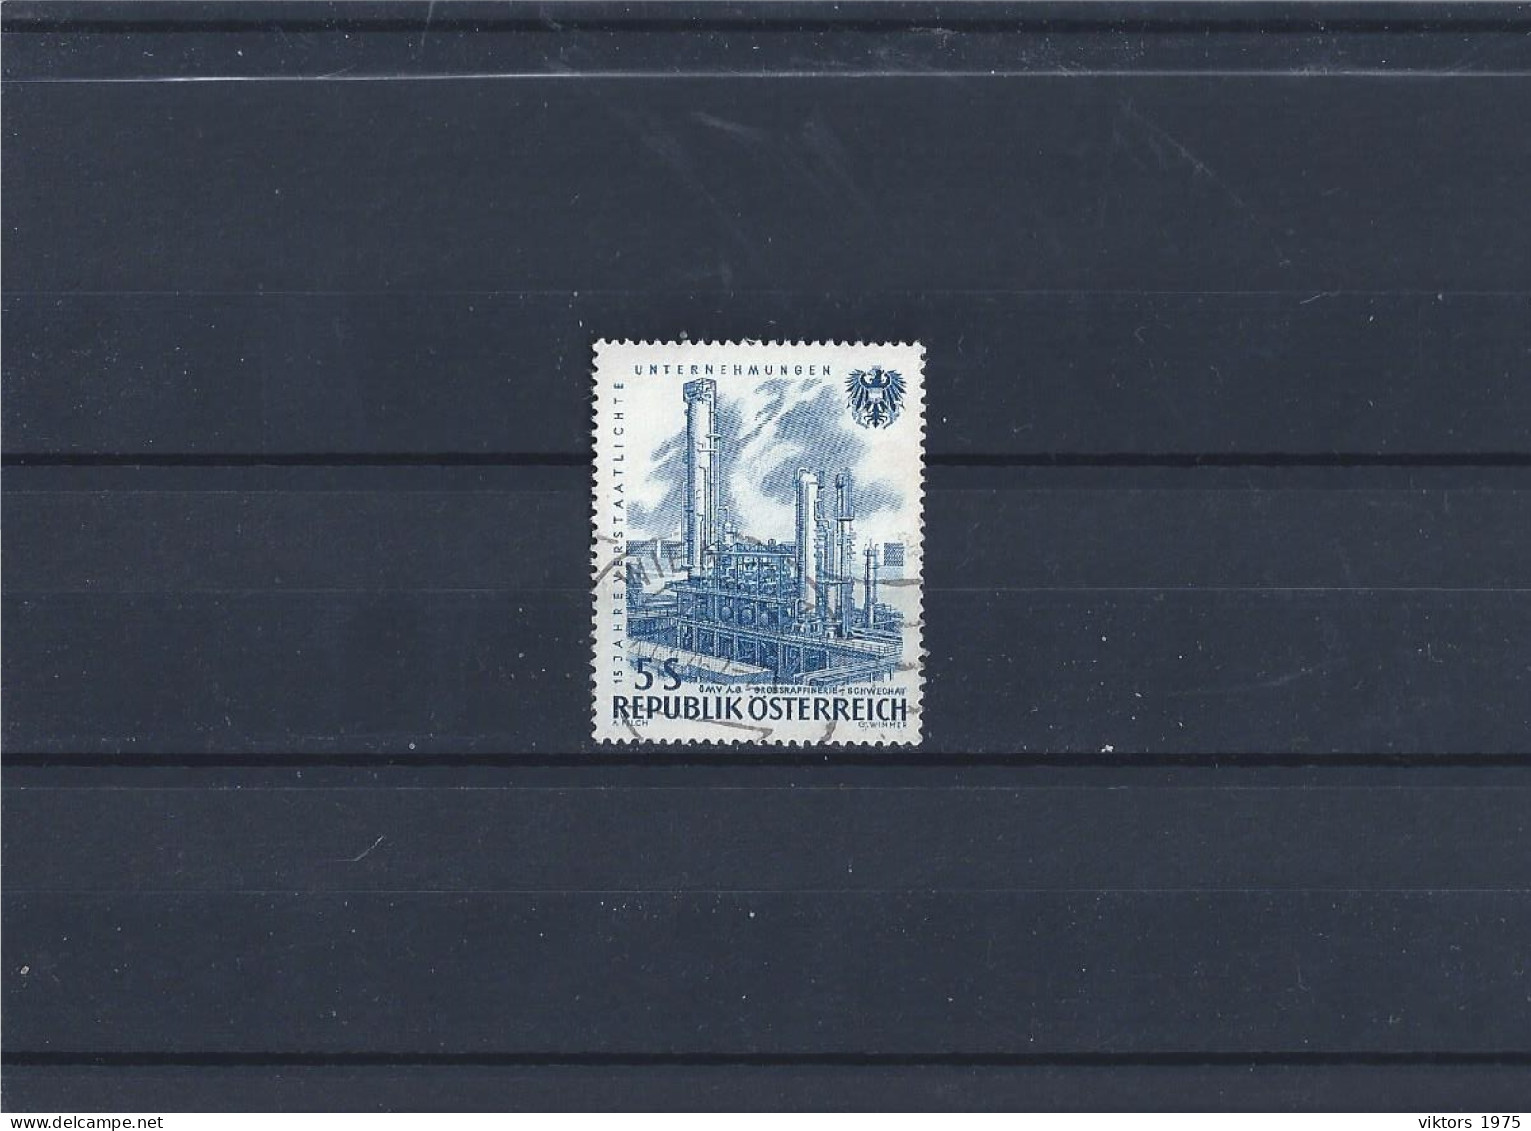 Used Stamp Nr.1096 In MICHEL Catalog - Gebruikt